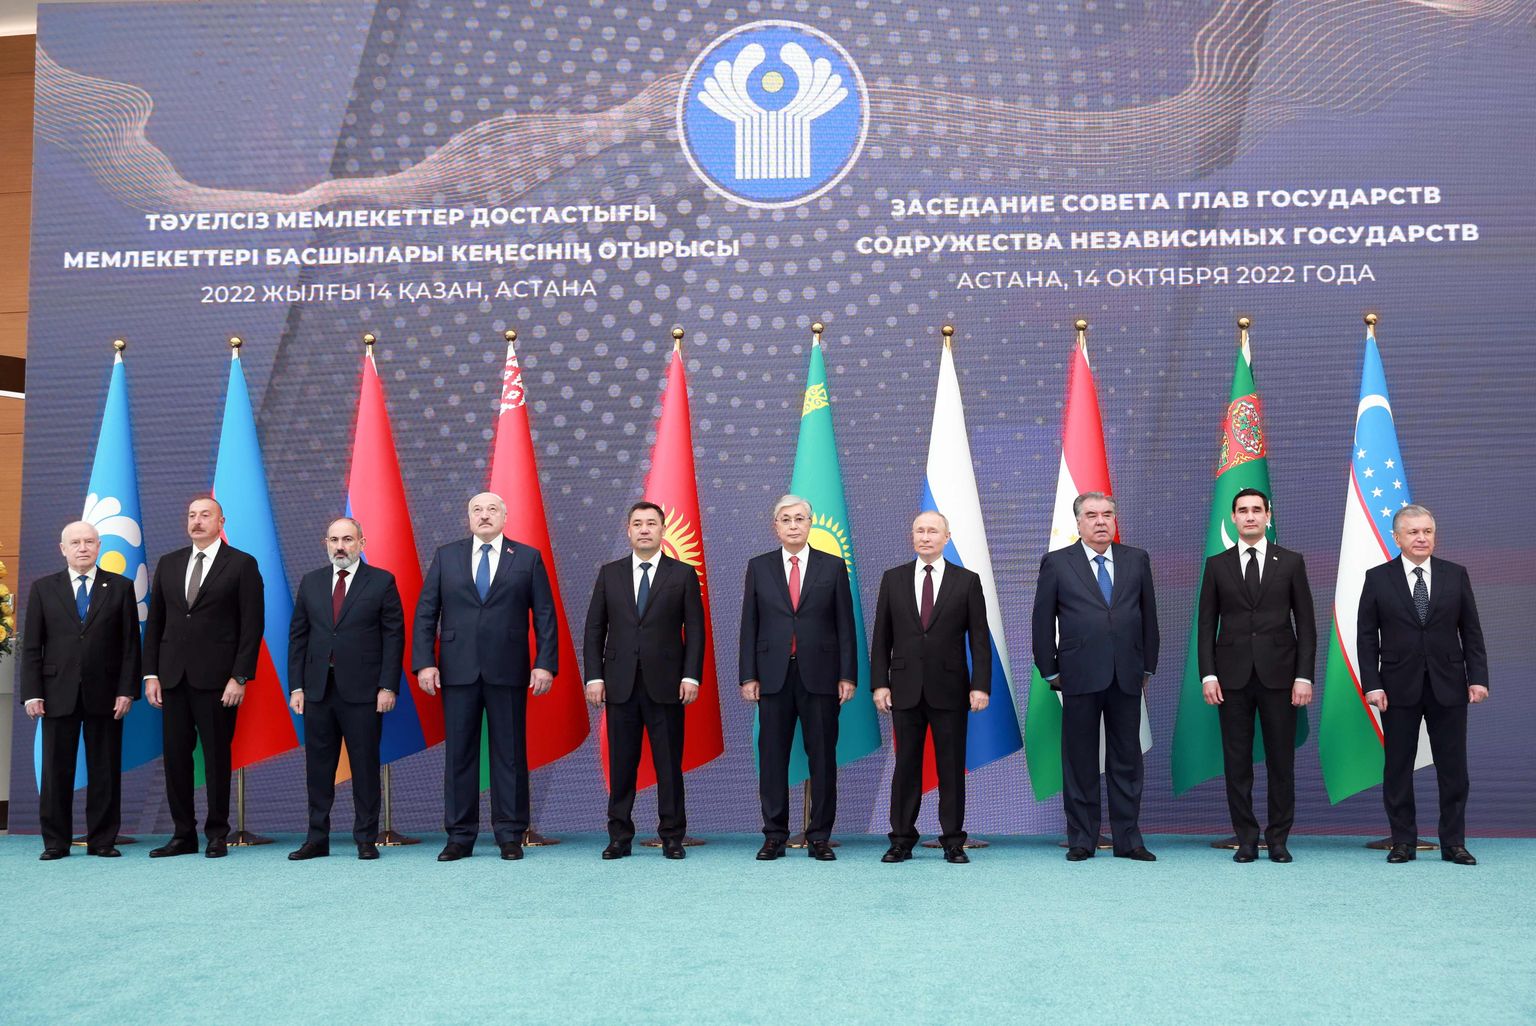 Sõltumatute Rahvaste Ühenduse (SRÜ) riigipead Kasahstanis 14. oktoobril 2022. aastal.